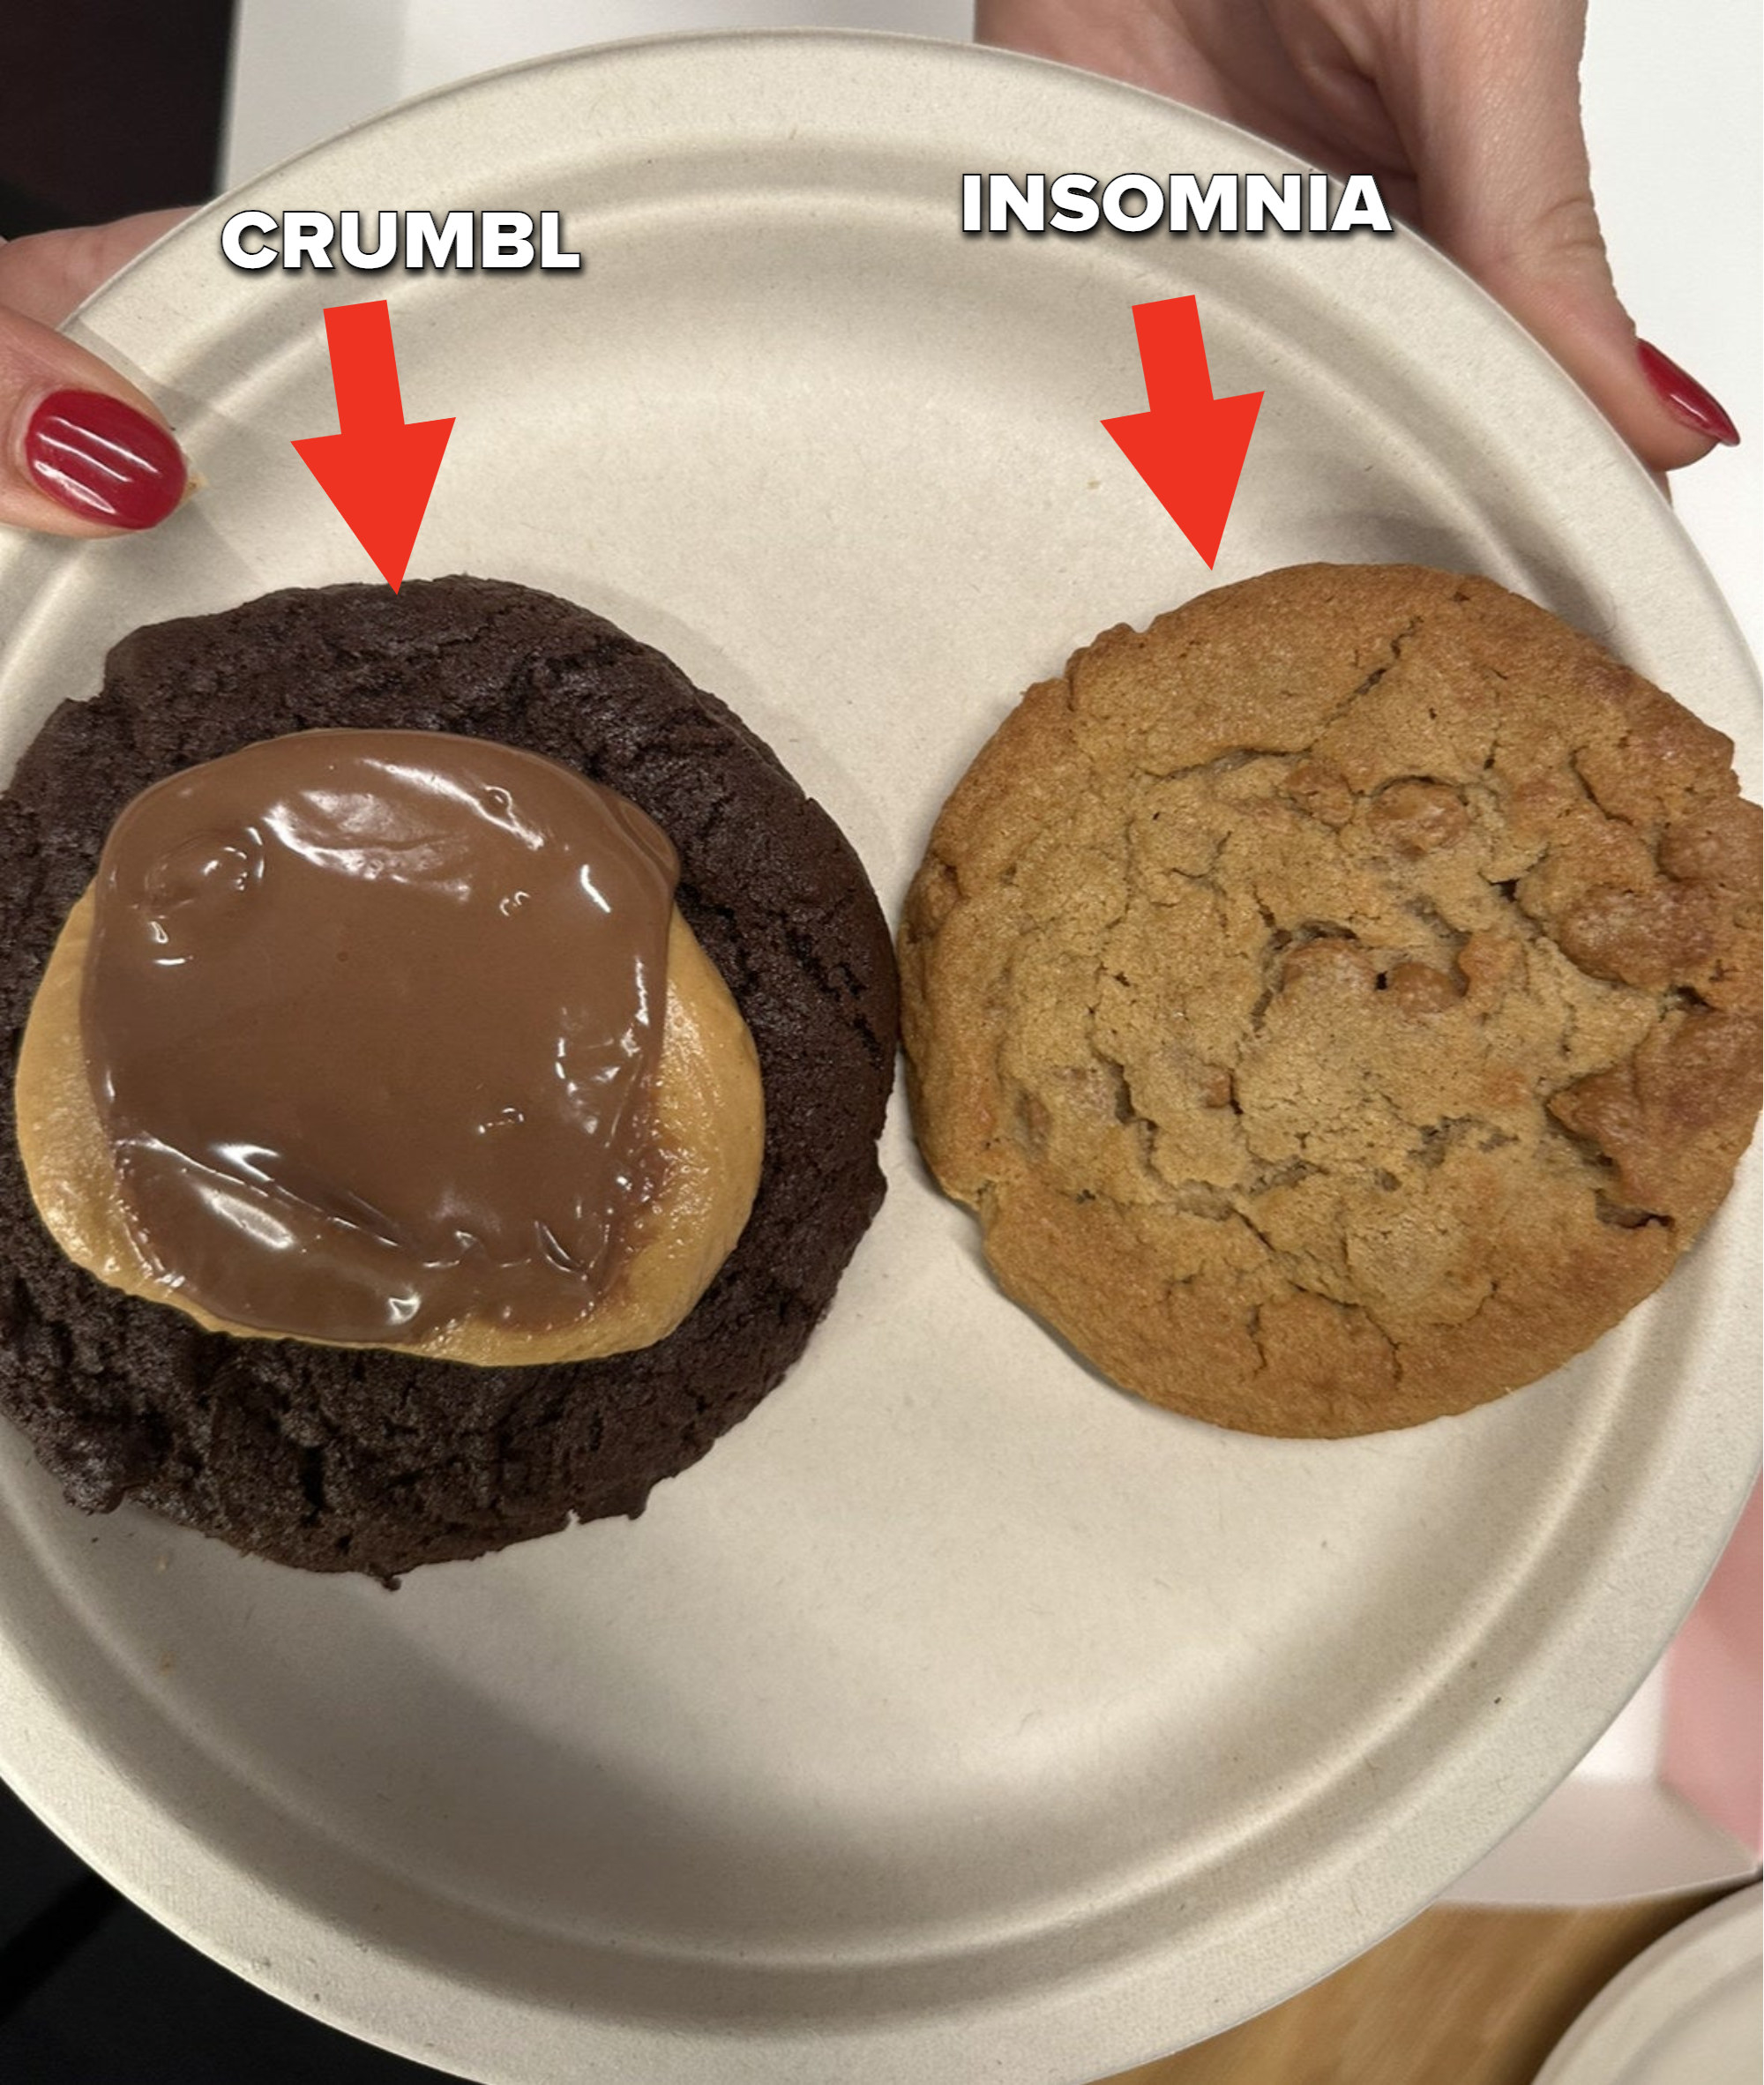 Crumbl vs. Insomnia cookies